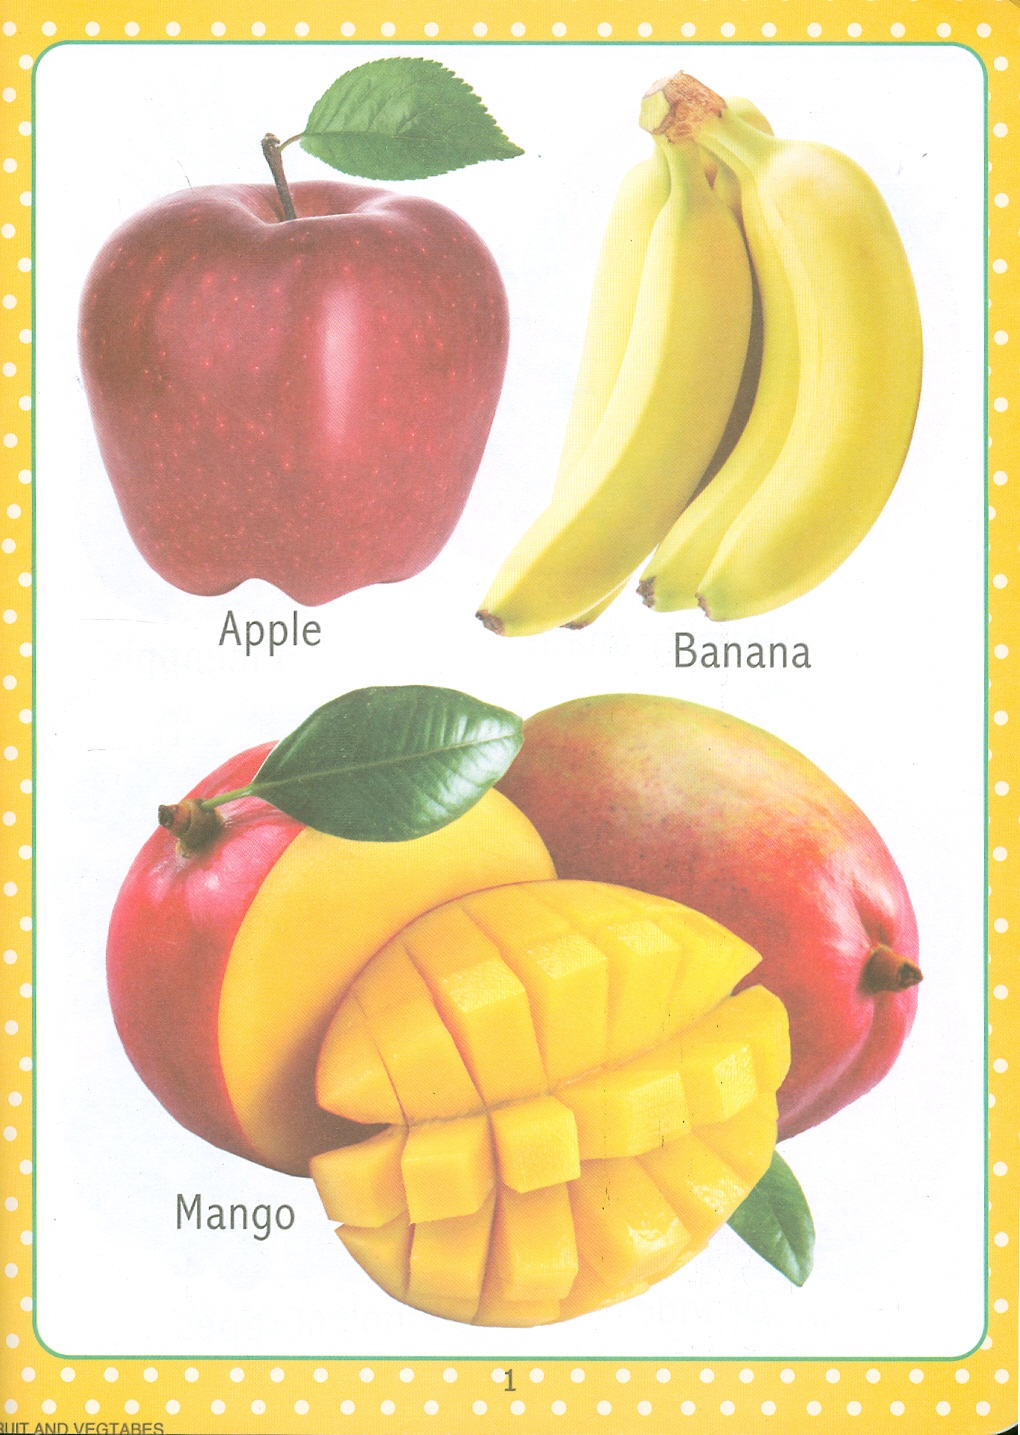 My First Early Learning - Fruit And Vegetables Book (Bài học đầu tiên của tôi - Sách về rau củ quả)